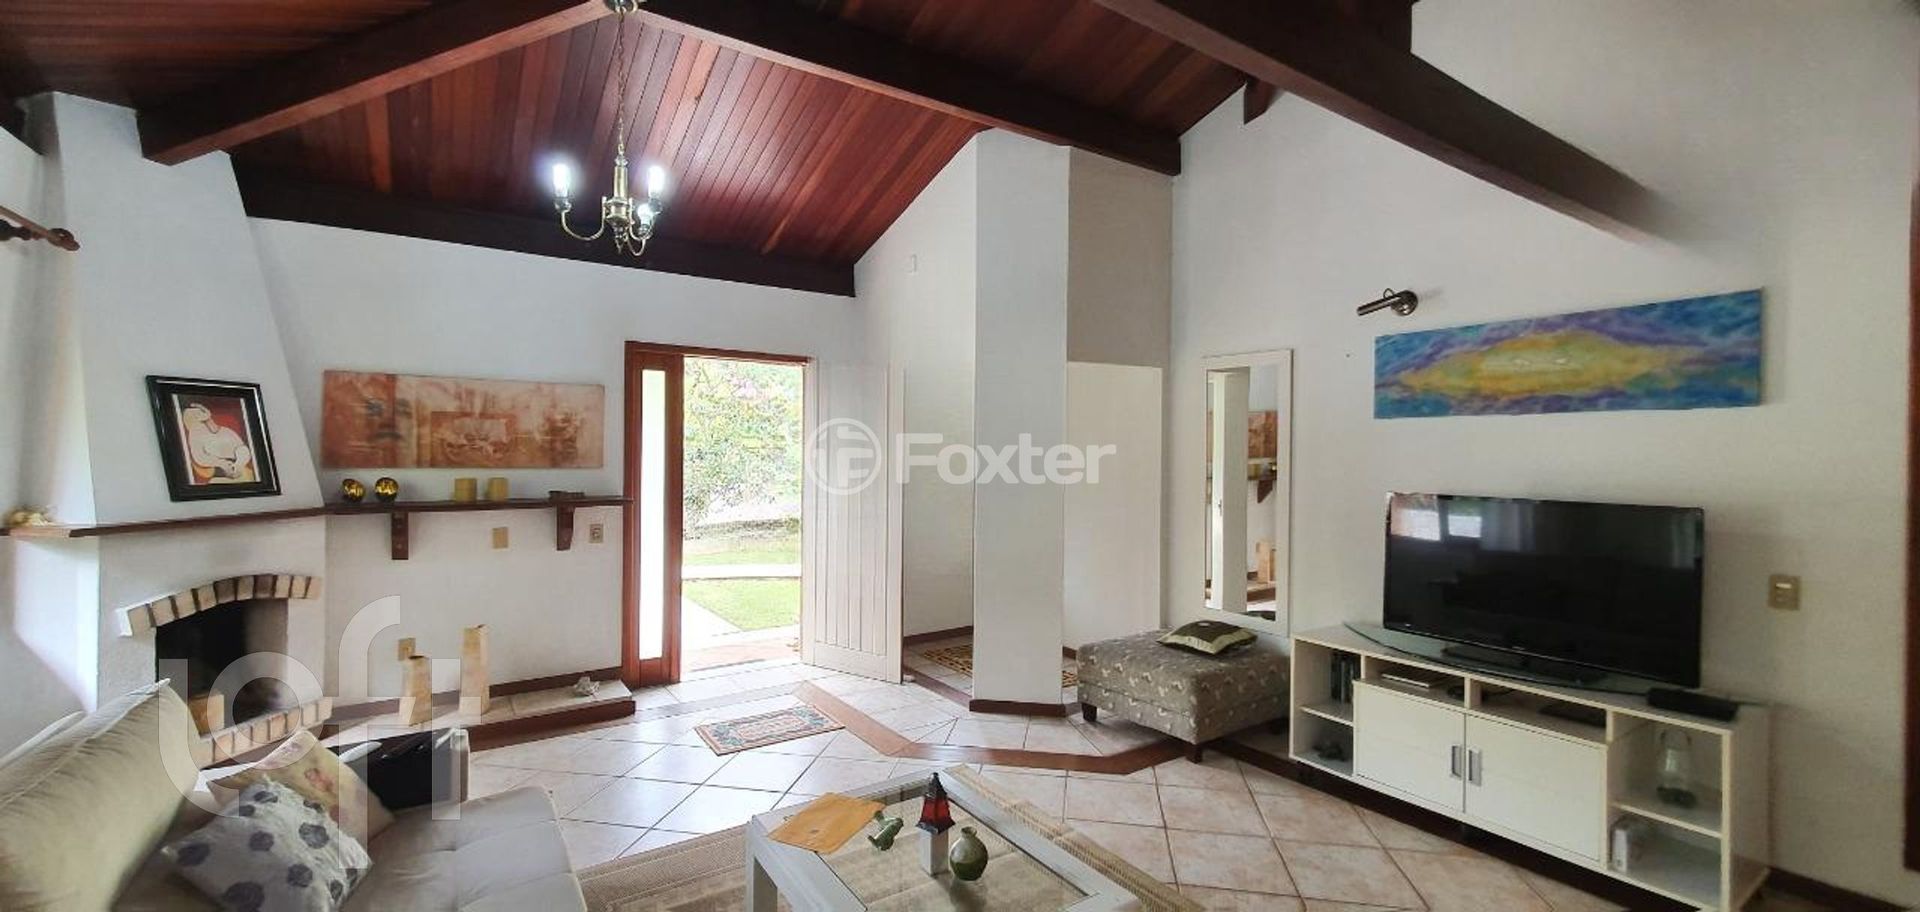 Casa em Condomínio 5 dorms à venda Rodovia Admar Gonzaga, Lagoa da Conceição - Florianópolis